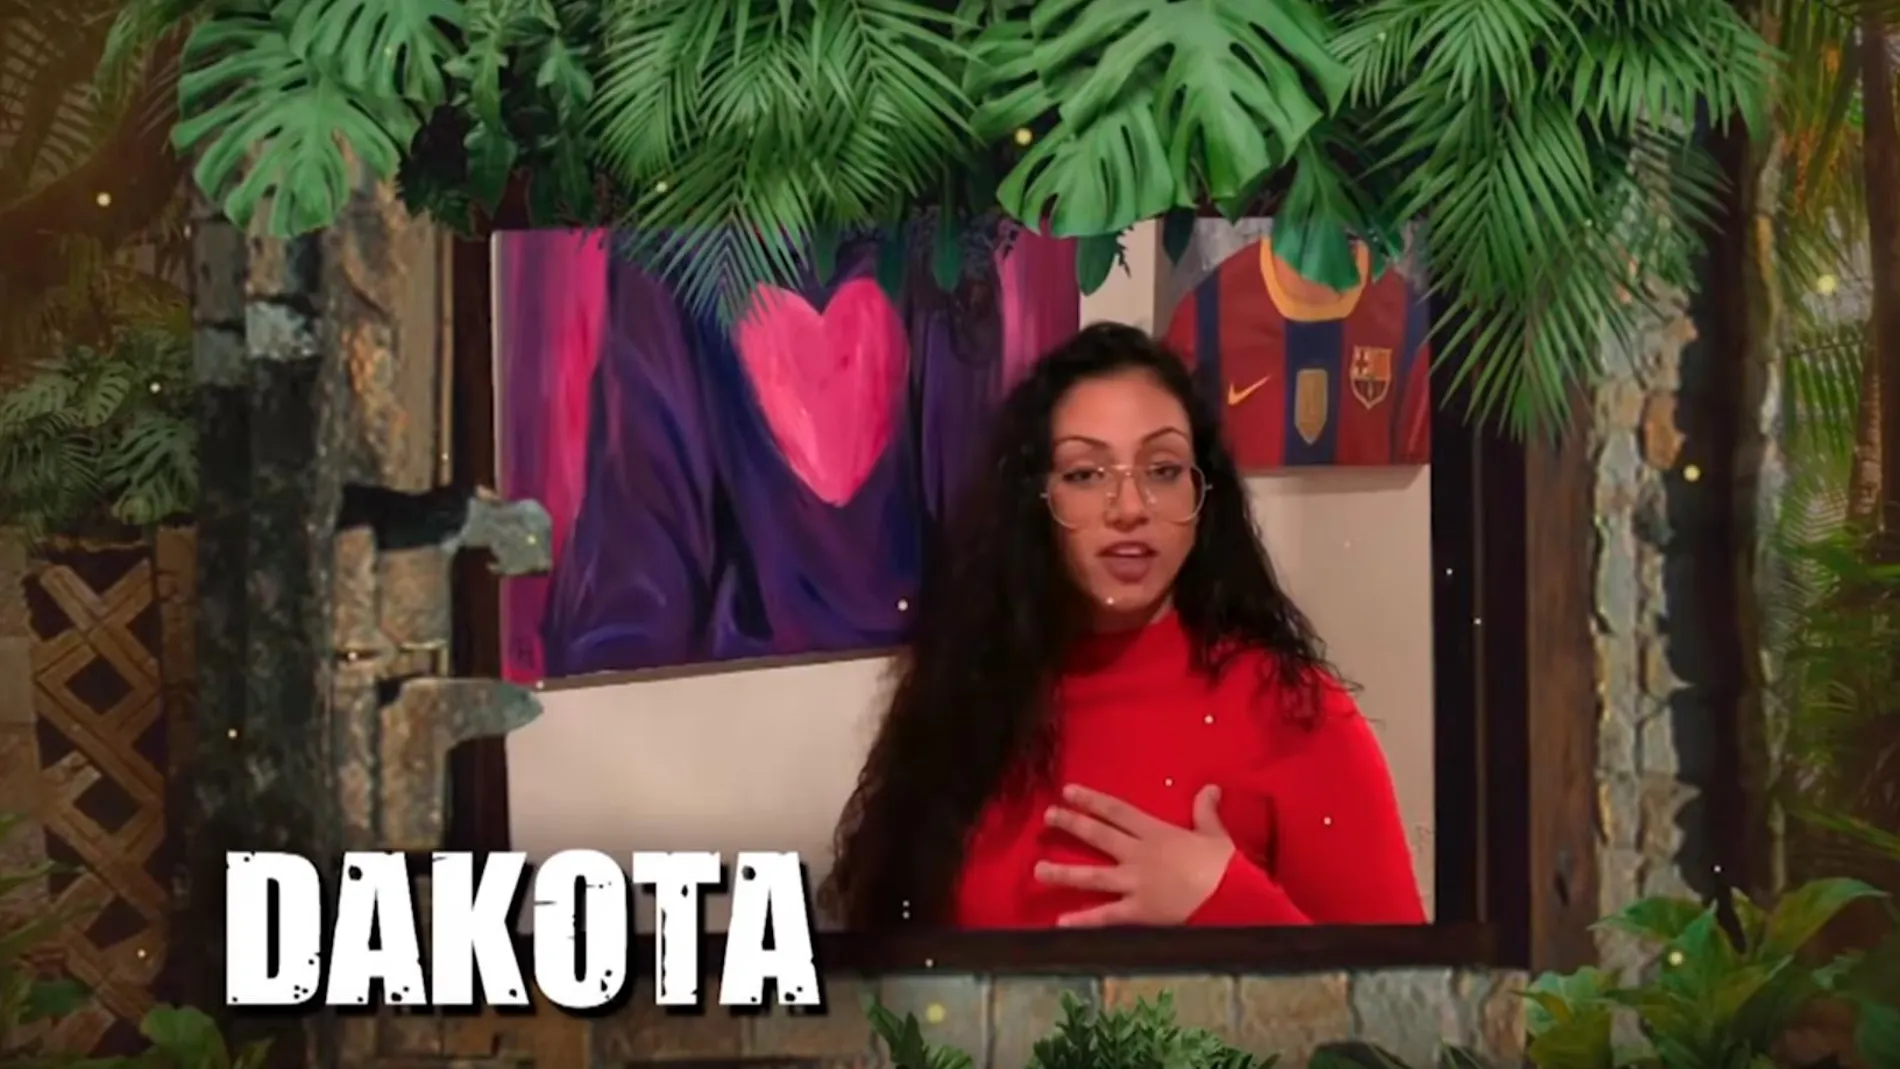 Dakota, en el vídeo de presentación como concursante de “Supervivientes 2019”